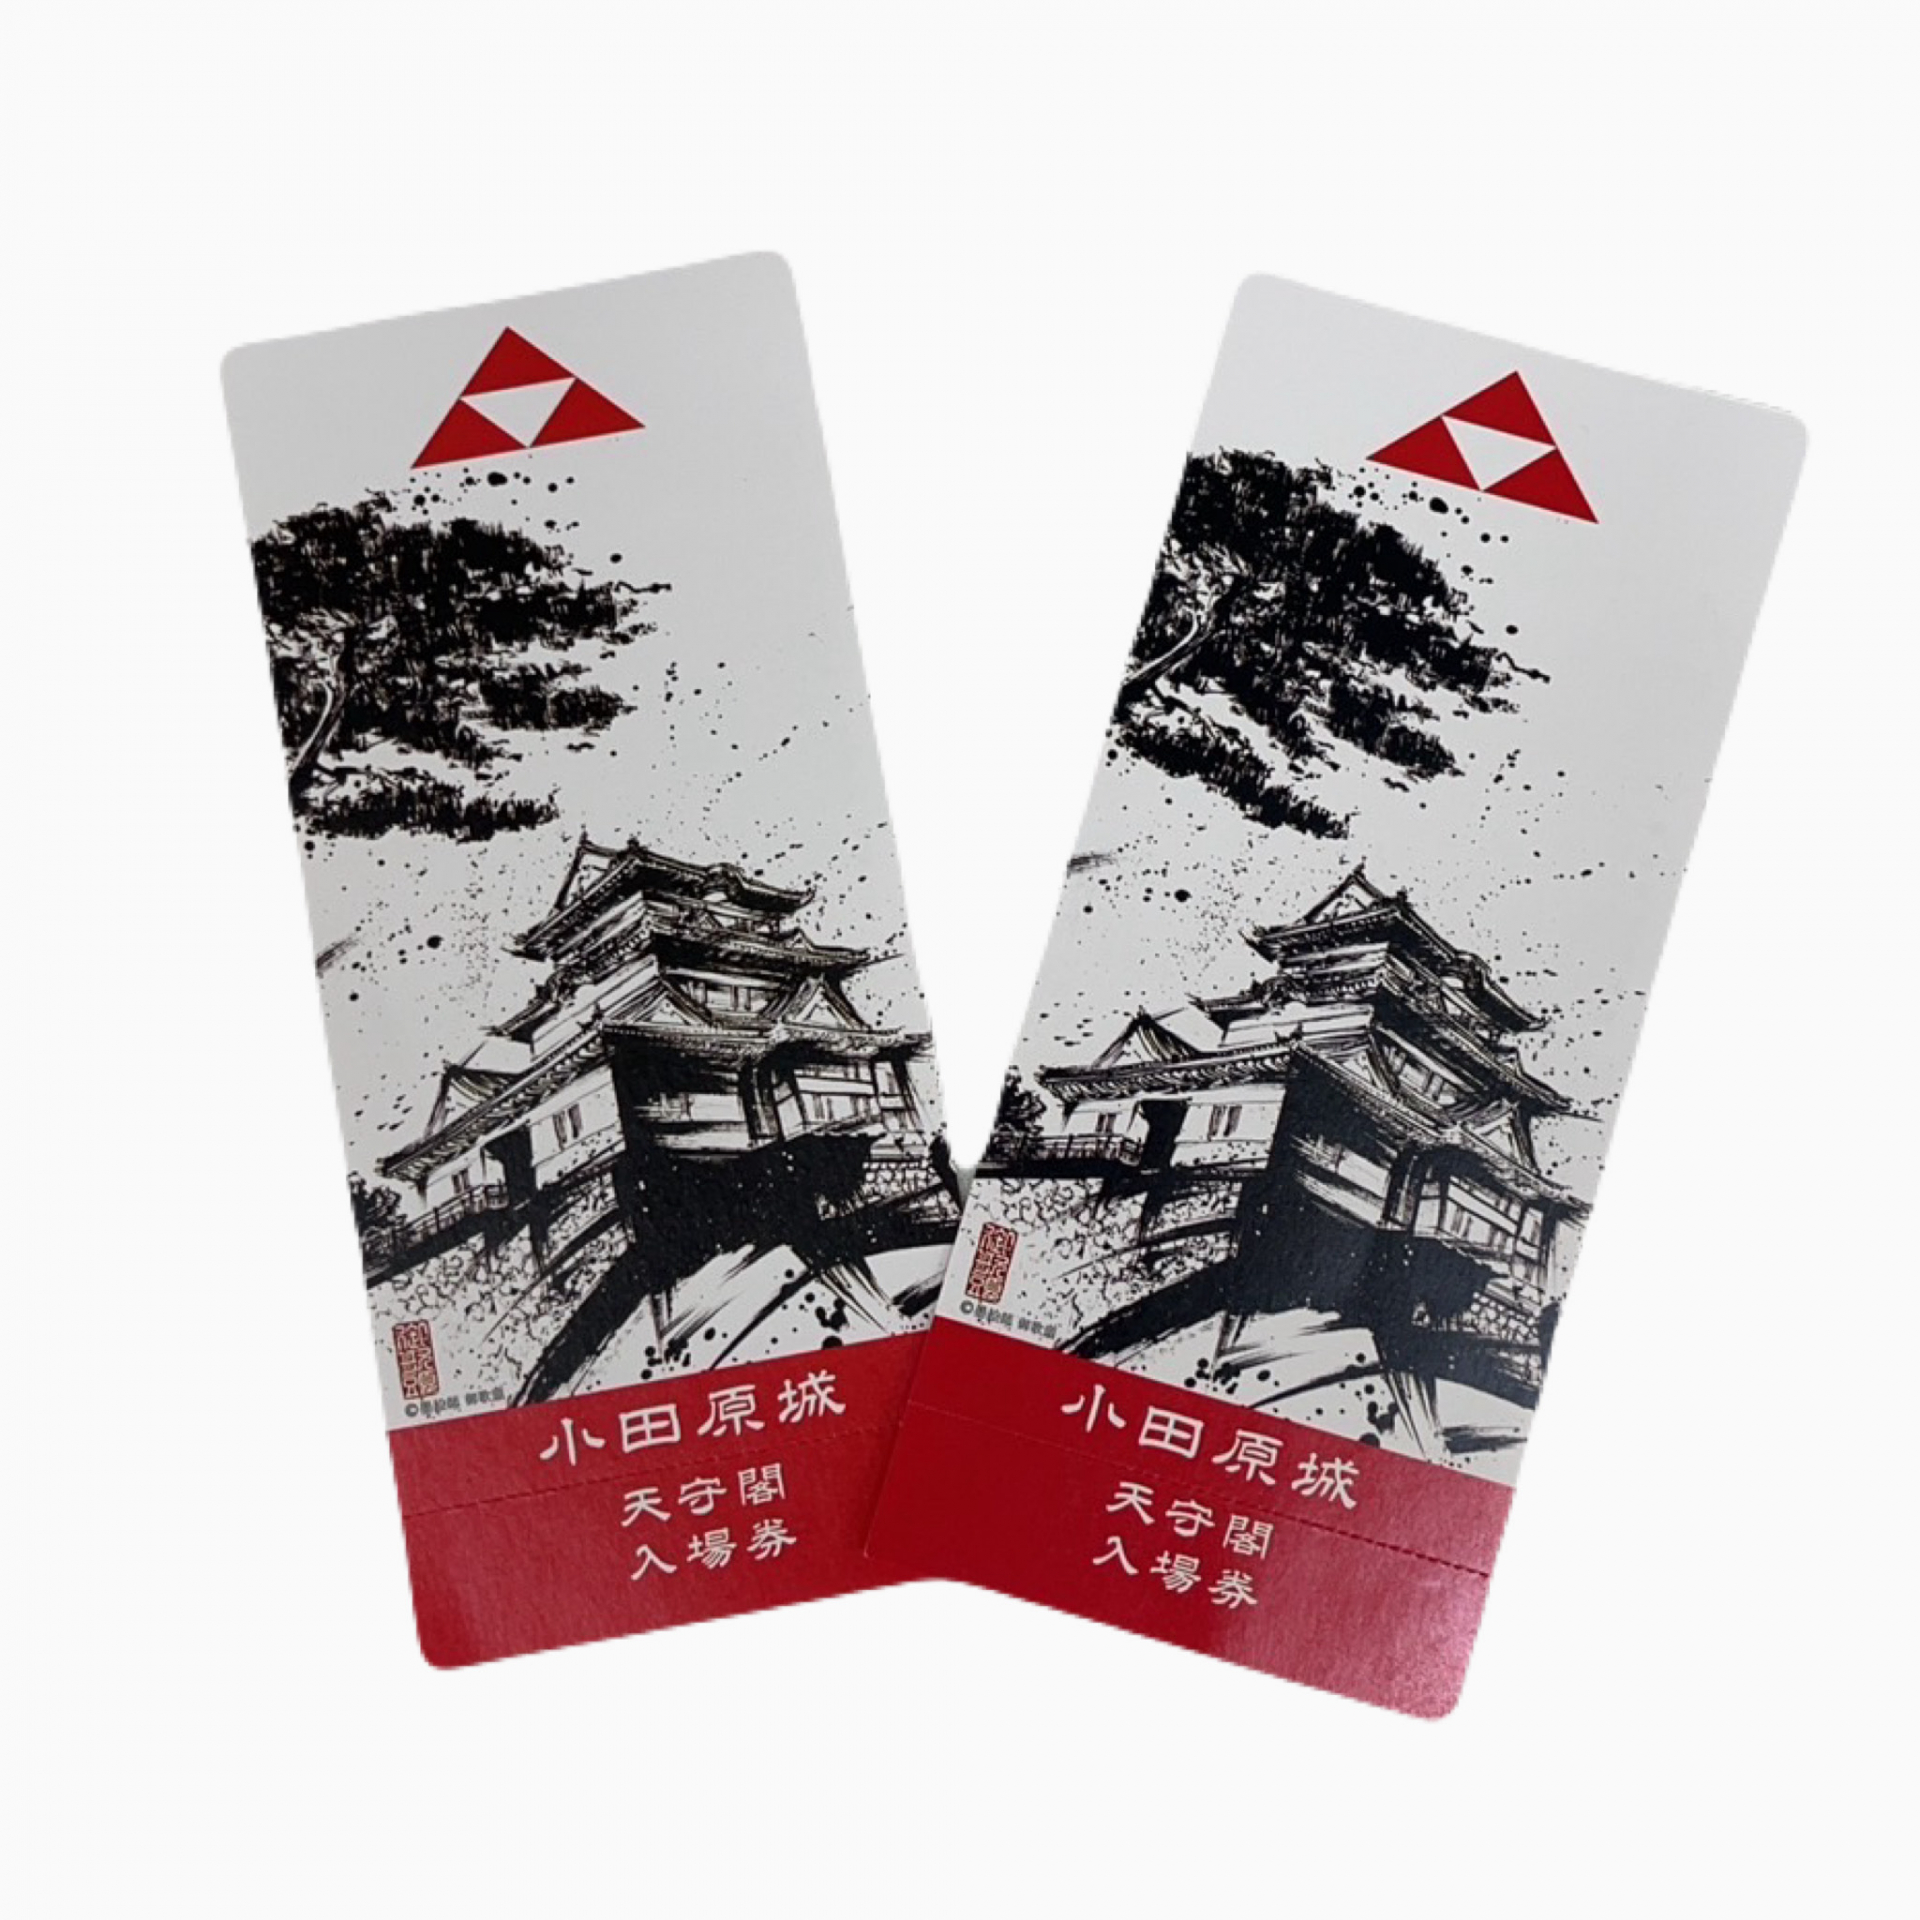 小田原城天守閣入場券の画像です。